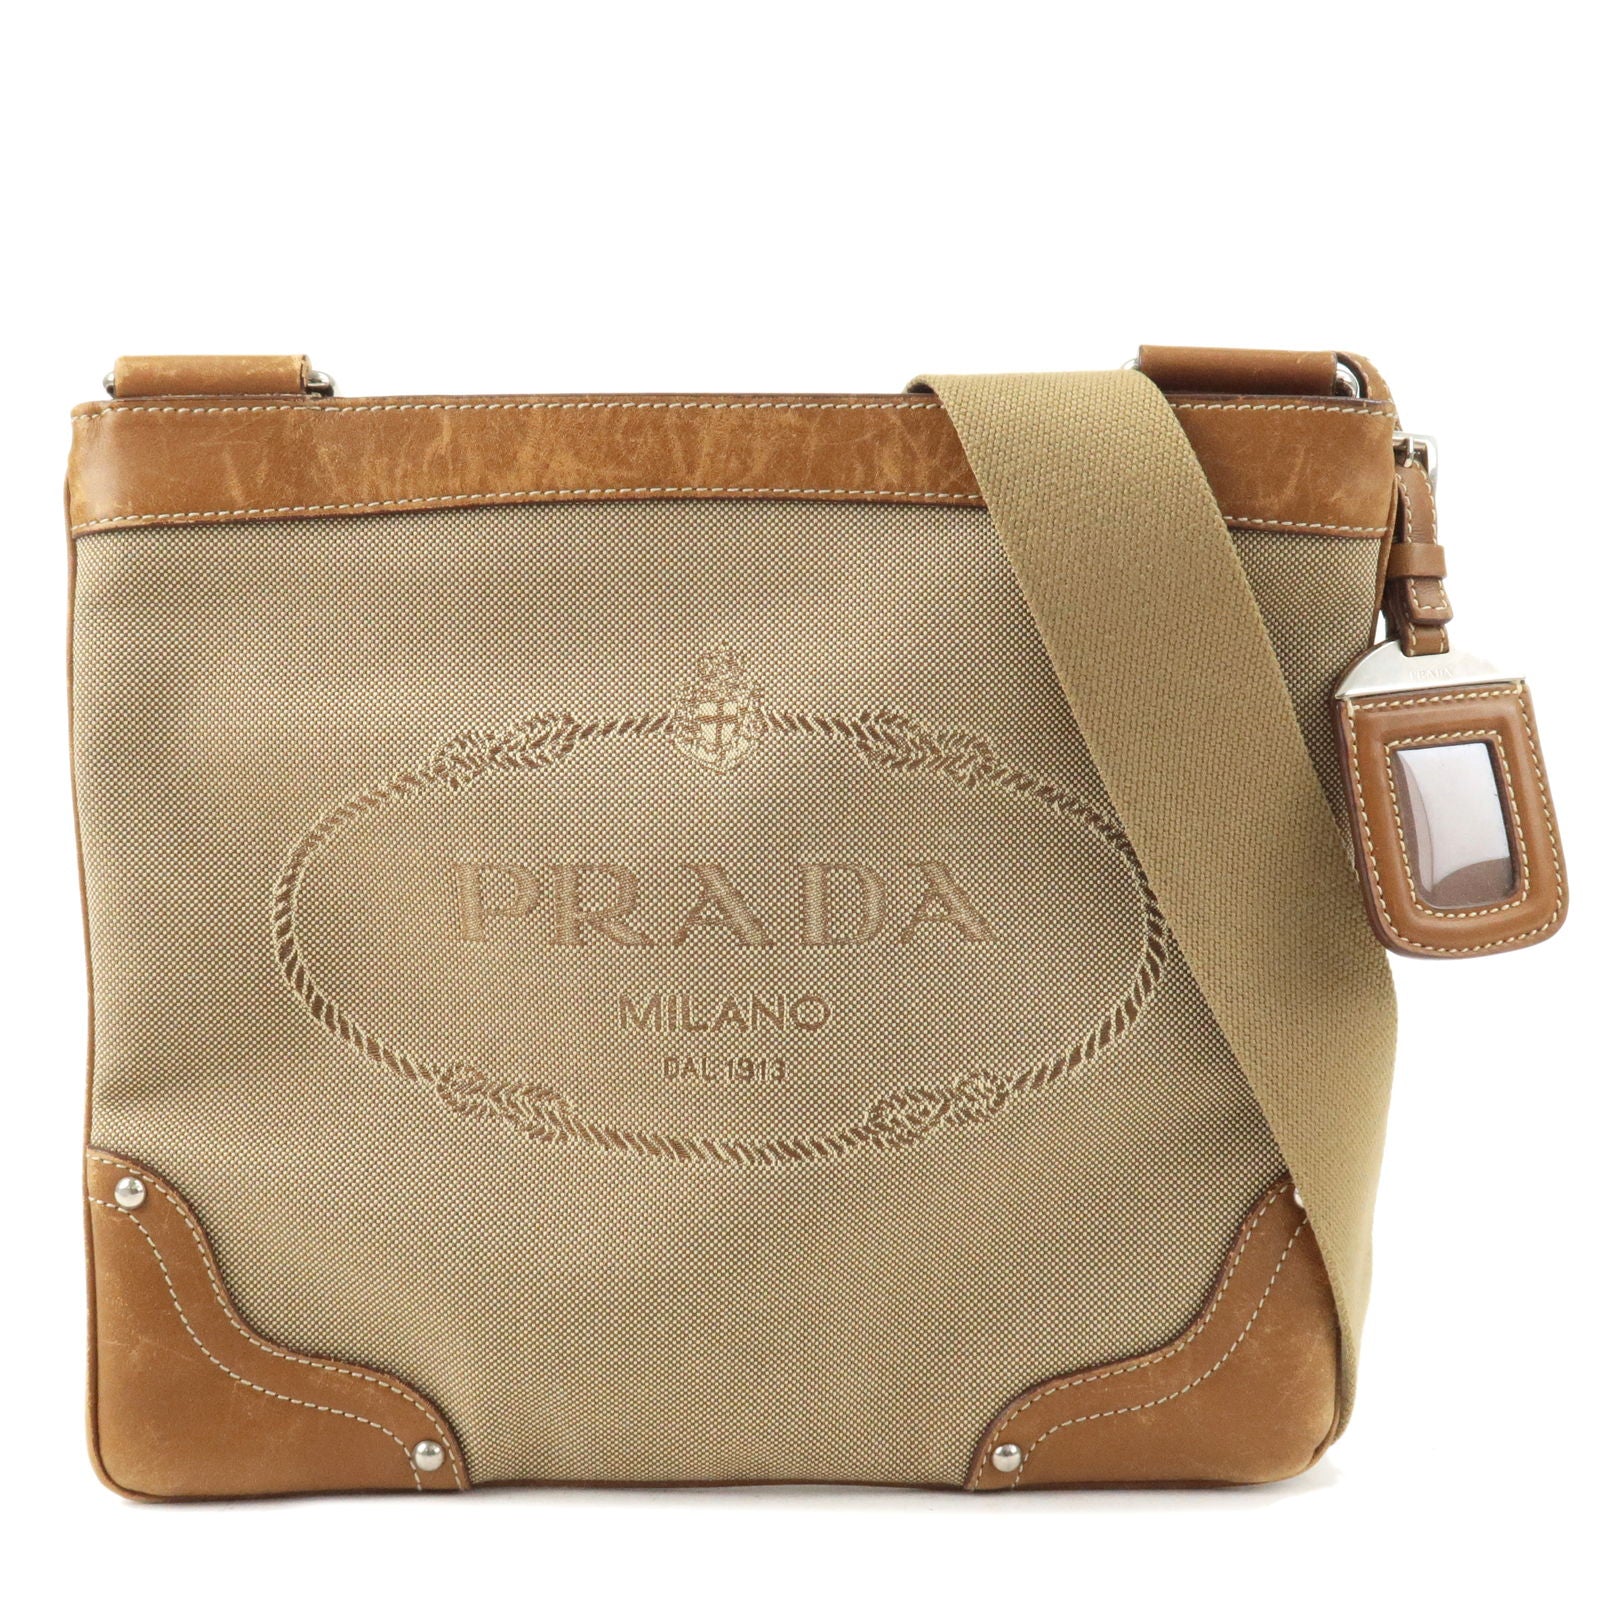 PRADA-Logo-Jacquard-Leather-Shoulder-Bag-Beige-Brown-BT0537